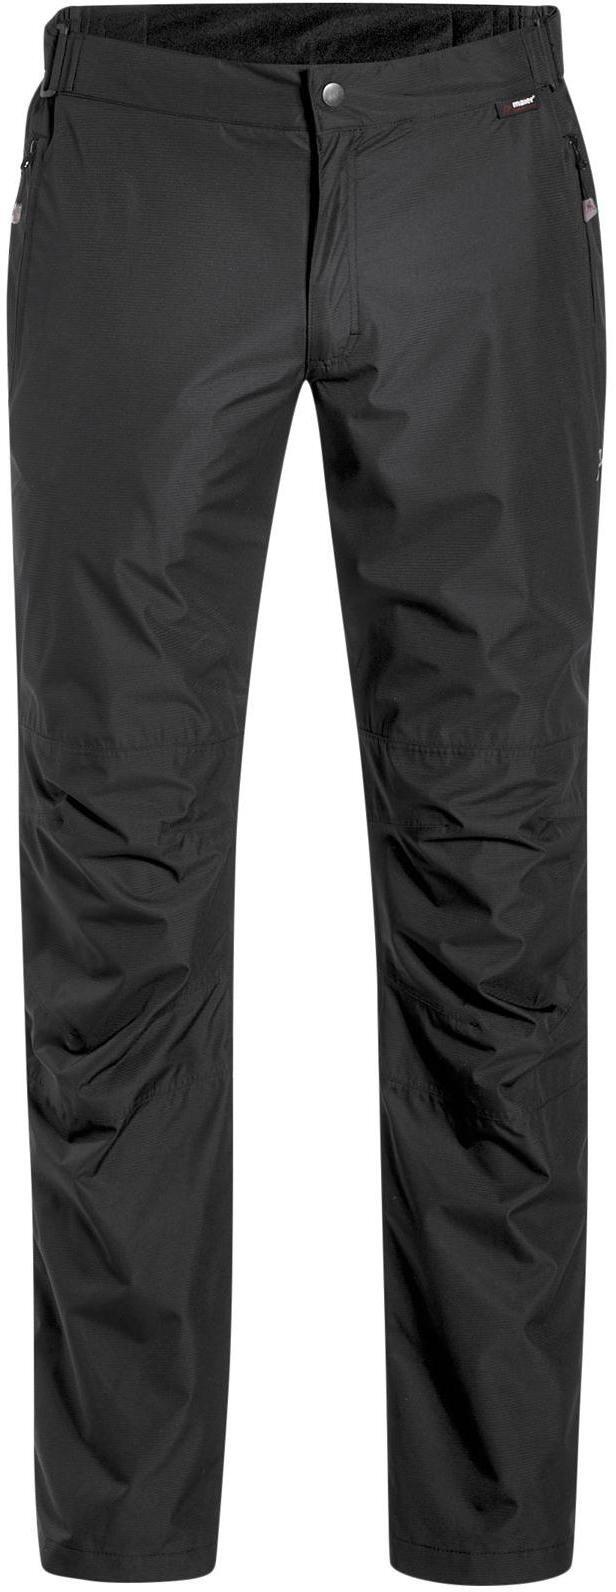 фото Спортивные брюки мужские maier sports 137902_0900 черные 46 eu